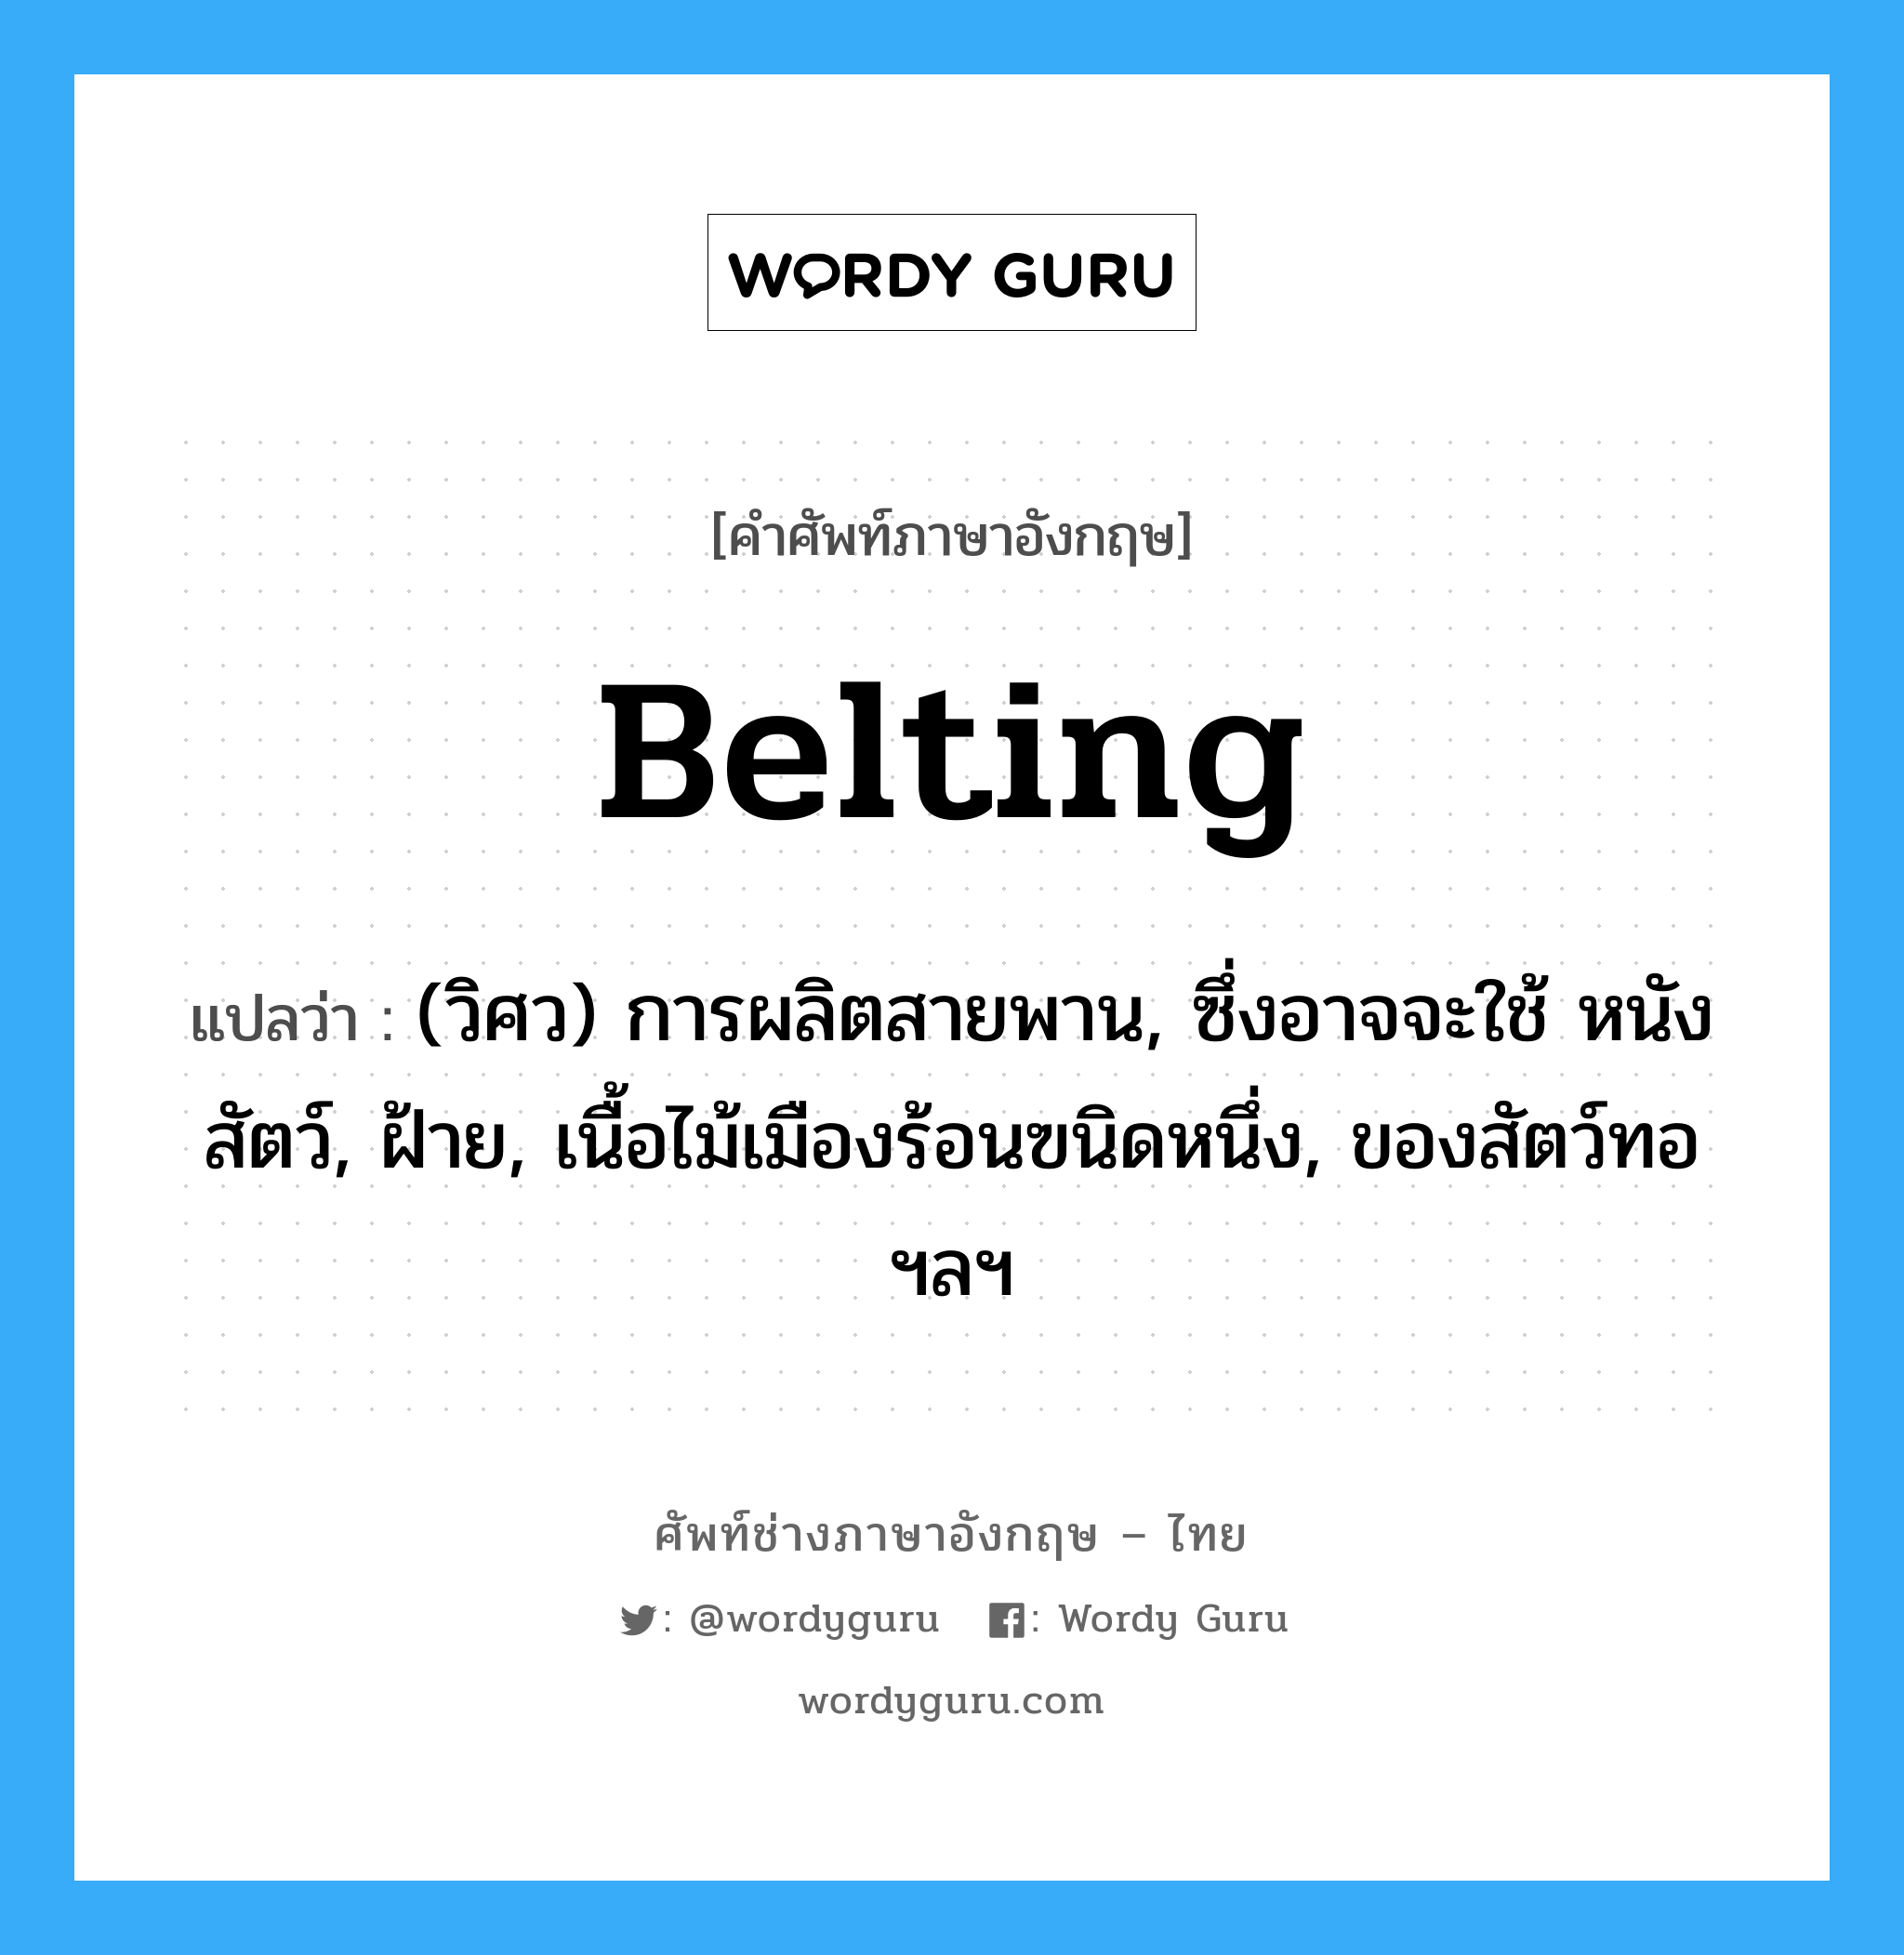 belting แปลว่า?, คำศัพท์ช่างภาษาอังกฤษ - ไทย belting คำศัพท์ภาษาอังกฤษ belting แปลว่า (วิศว) การผลิตสายพาน, ซึ่งอาจจะใช้ หนังสัตว์, ฝ้าย, เนื้อไม้เมืองร้อนฃนิดหนึ่ง, ของสัตว์ทอ ฯลฯ